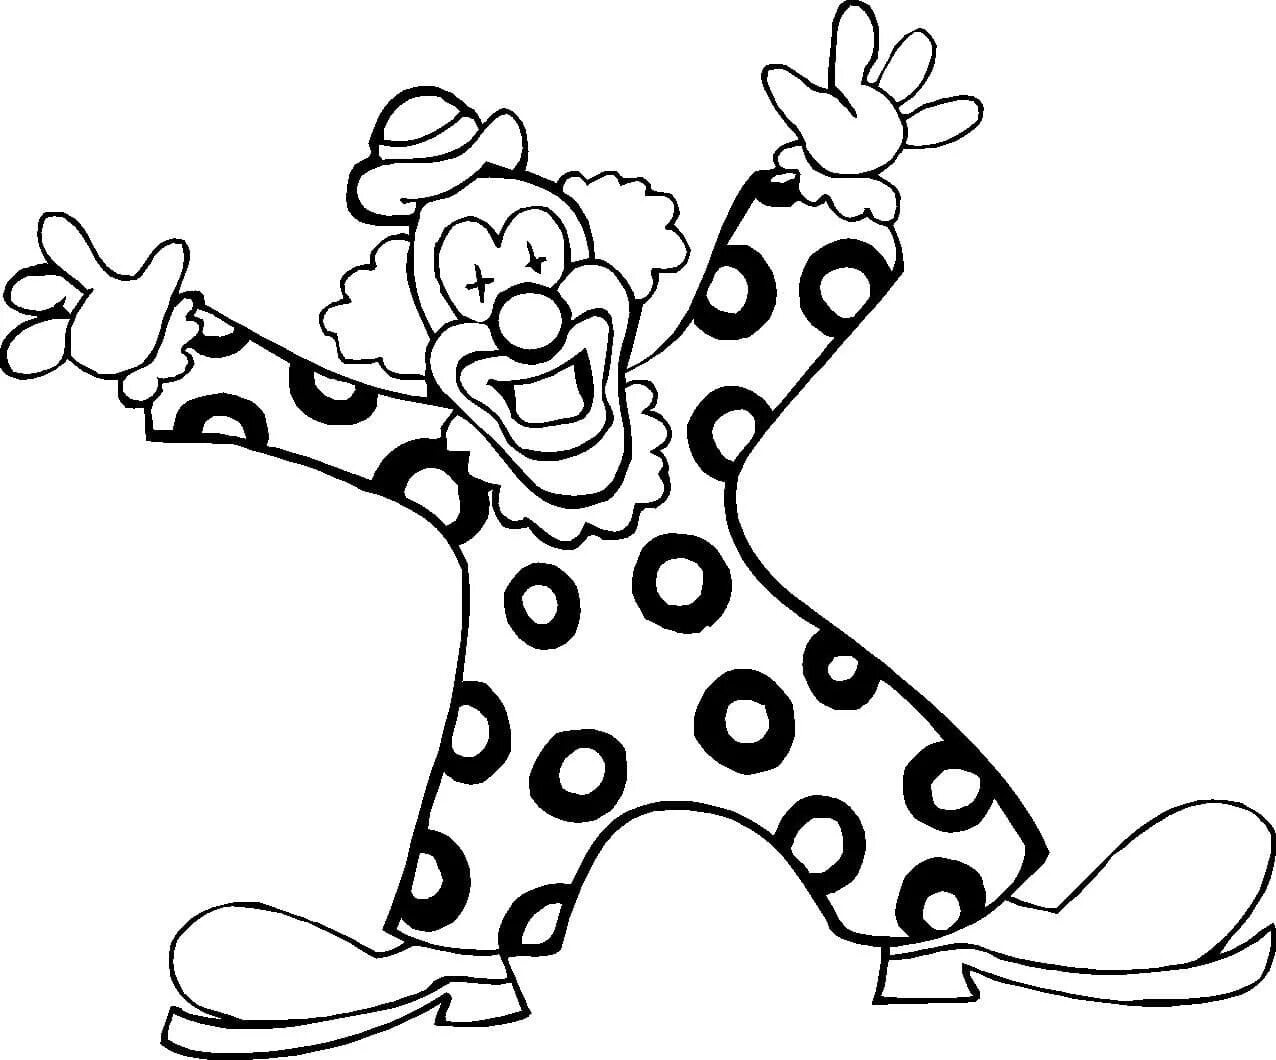 Клоуны раскраска для детей 5 лет. Клоун раскраска. Клоун раскраска для детей. Трафарет клоуна для раскрашивания. Клоун картинка для детей раскраска.